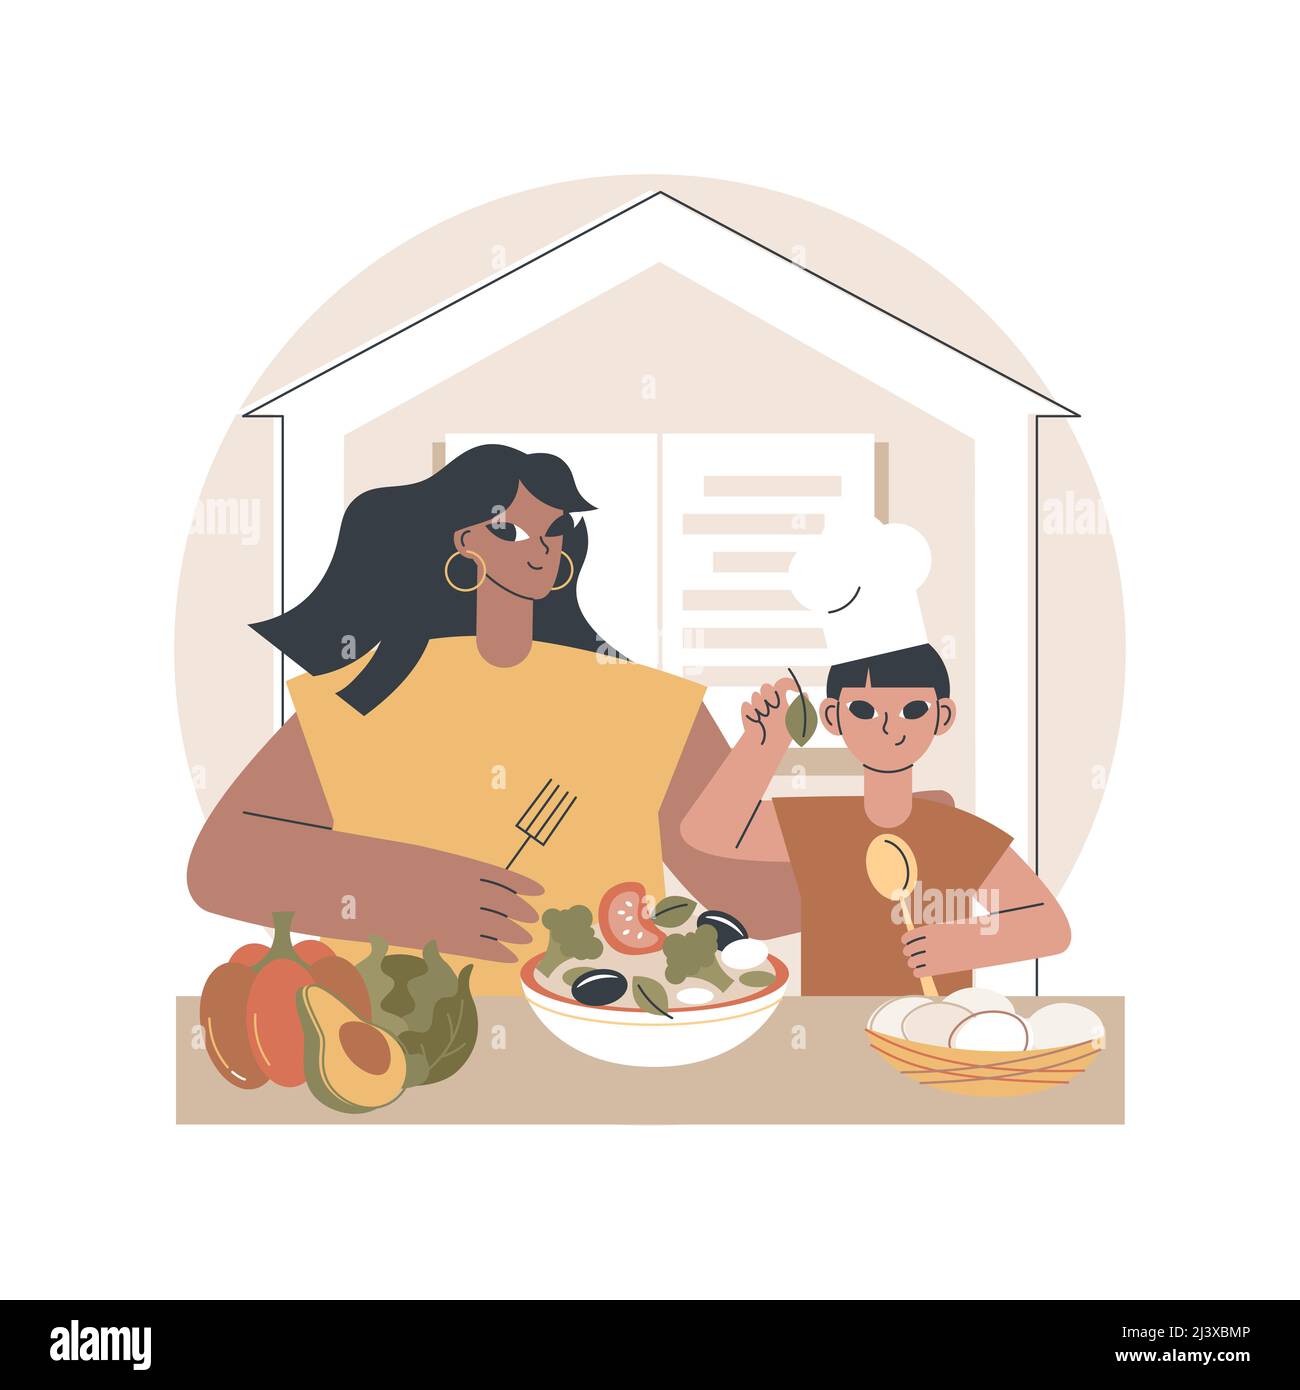 Home cucina concetto astratto illustrazione vettoriale. Cucina a casa, online ricette facili da mangiare, attività per tutta la famiglia, pasto tradizionale fatto in casa, cucina TV Illustrazione Vettoriale